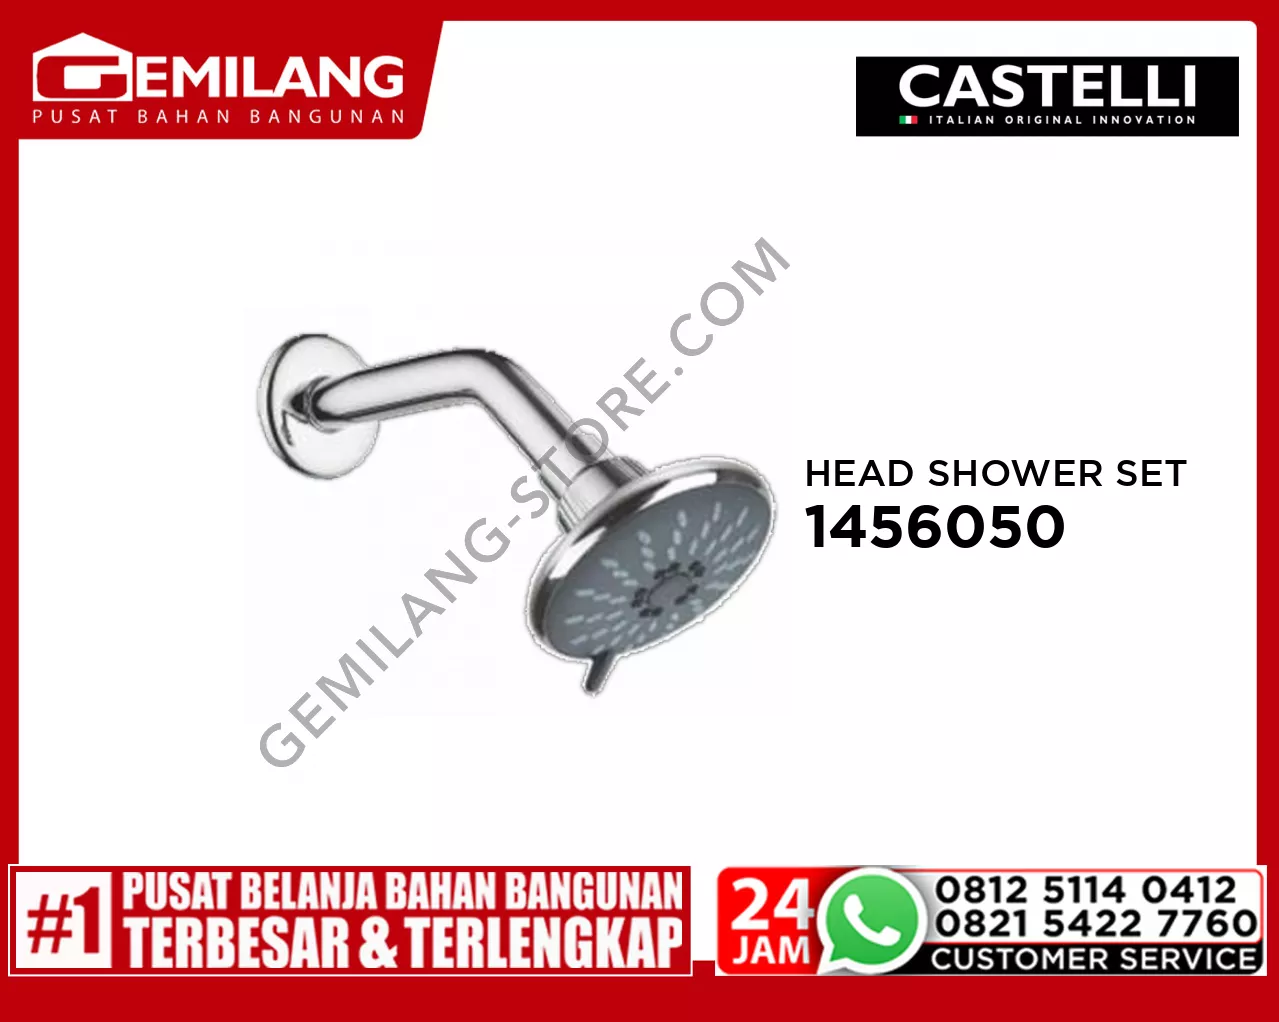 CASTELLI ROUND RAIN HEAD SHOWER SET 1456050